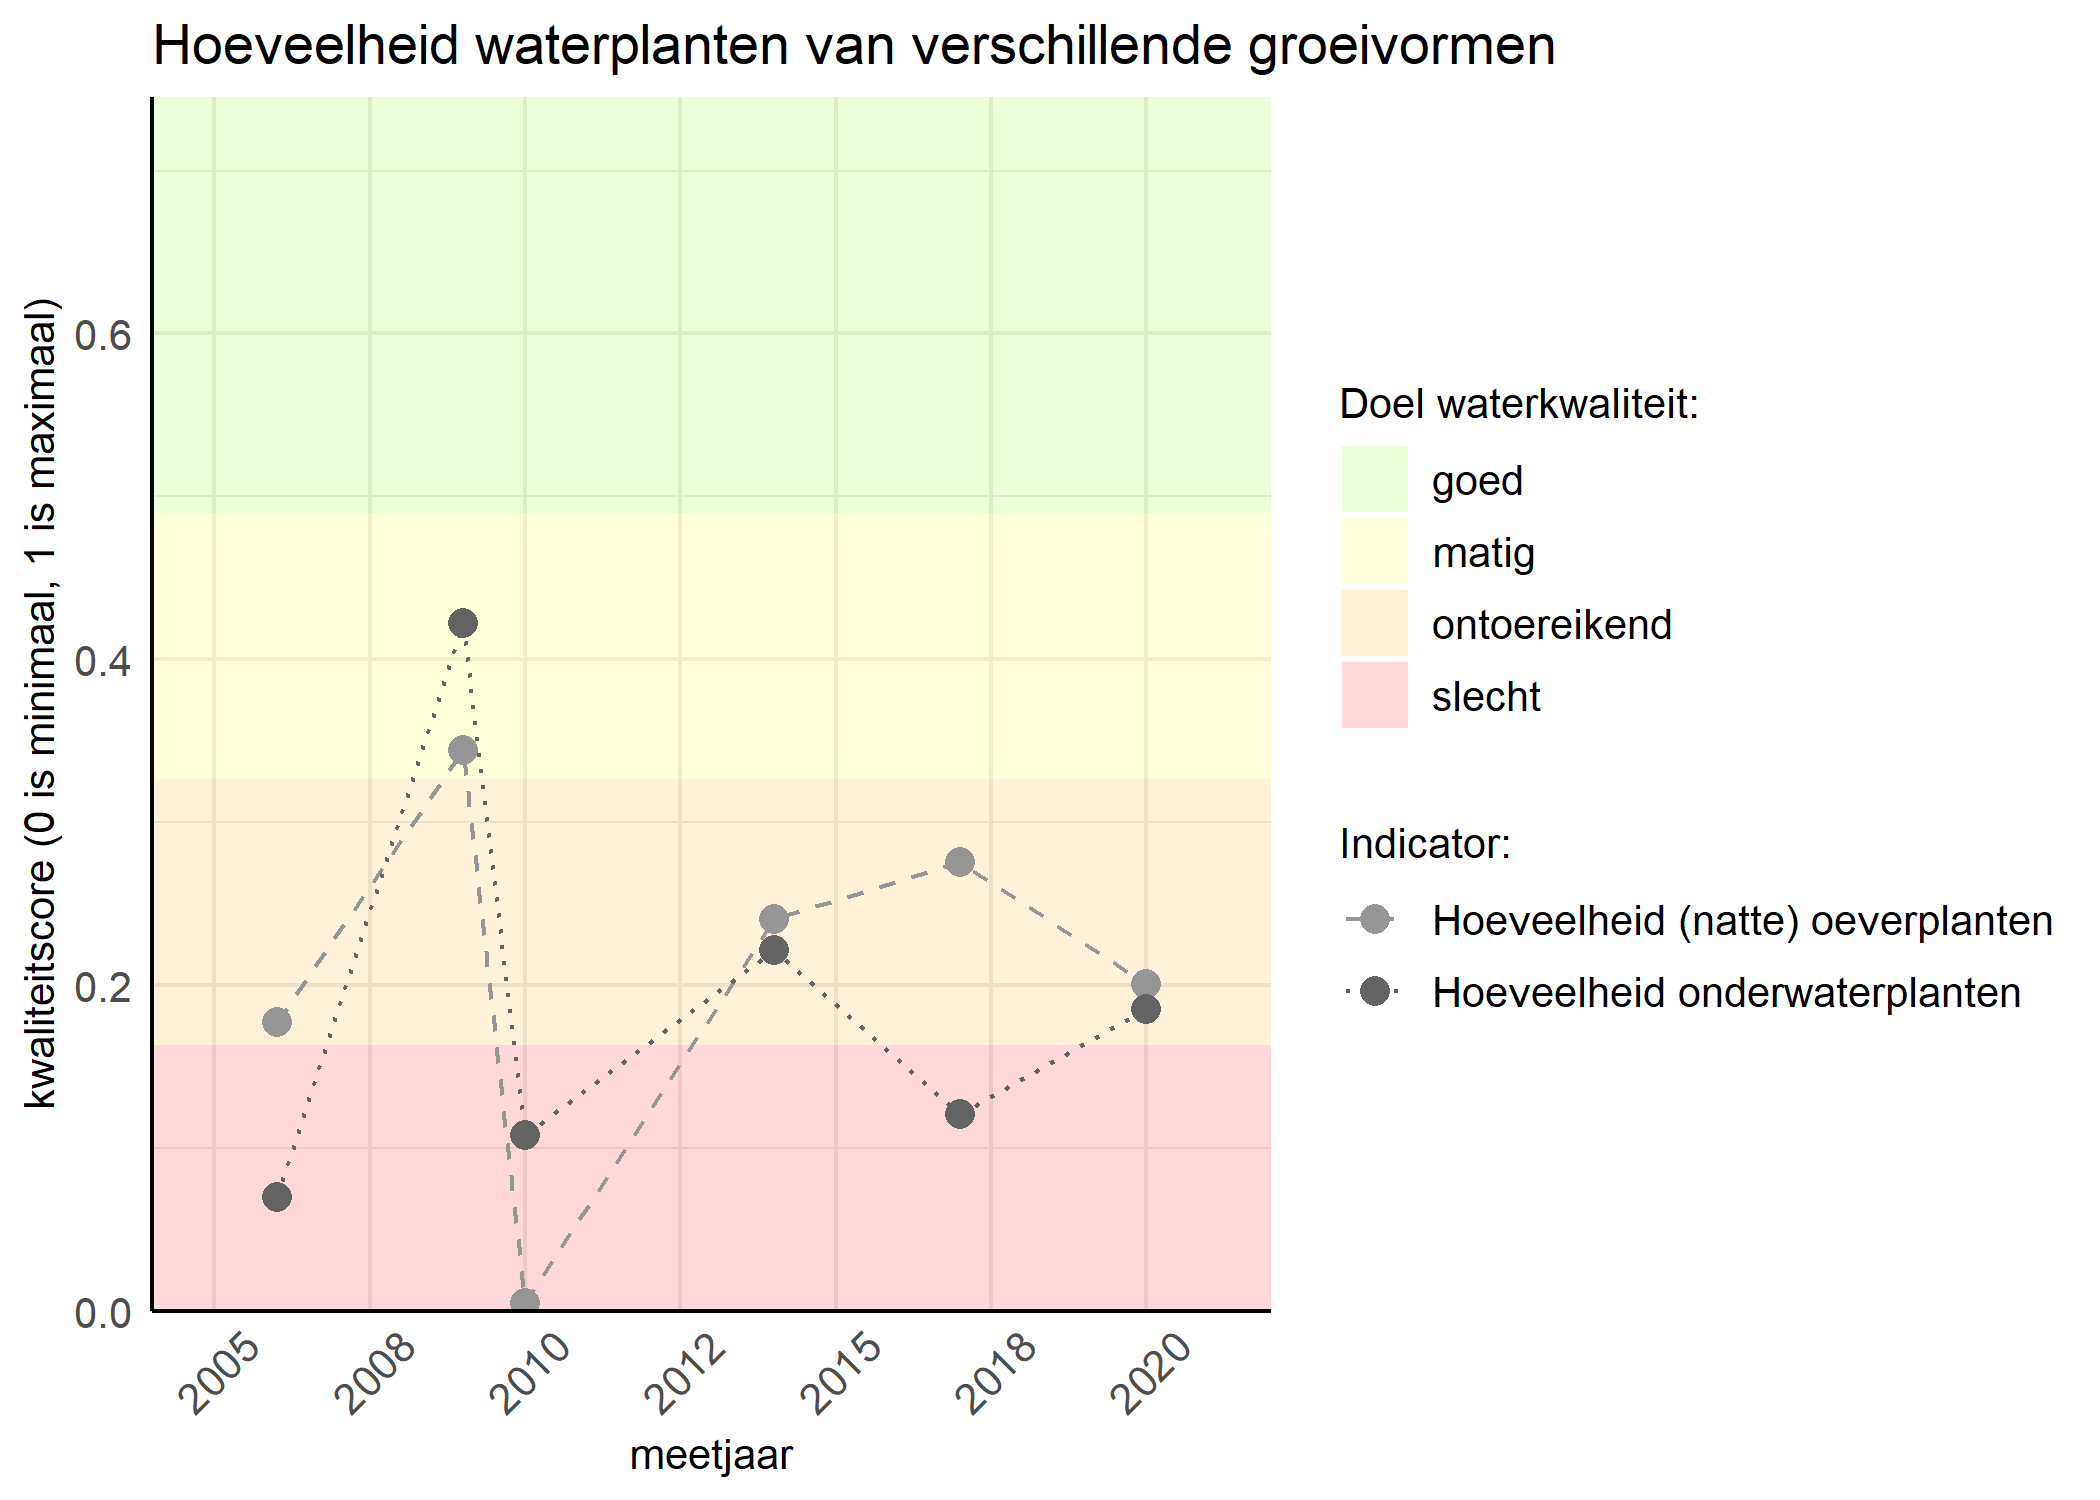 Figure 3: Kwaliteitsscore van de hoeveelheid waterplanten van verschillende groeivormen vergeleken met doelen. De achtergrondkleuren in het figuur zijn het kwaliteitsoordeel en de stippen zijn de kwaliteitsscores per jaar. Als de lijn over de groene achtergrondkleur valt is het doel gehaald.